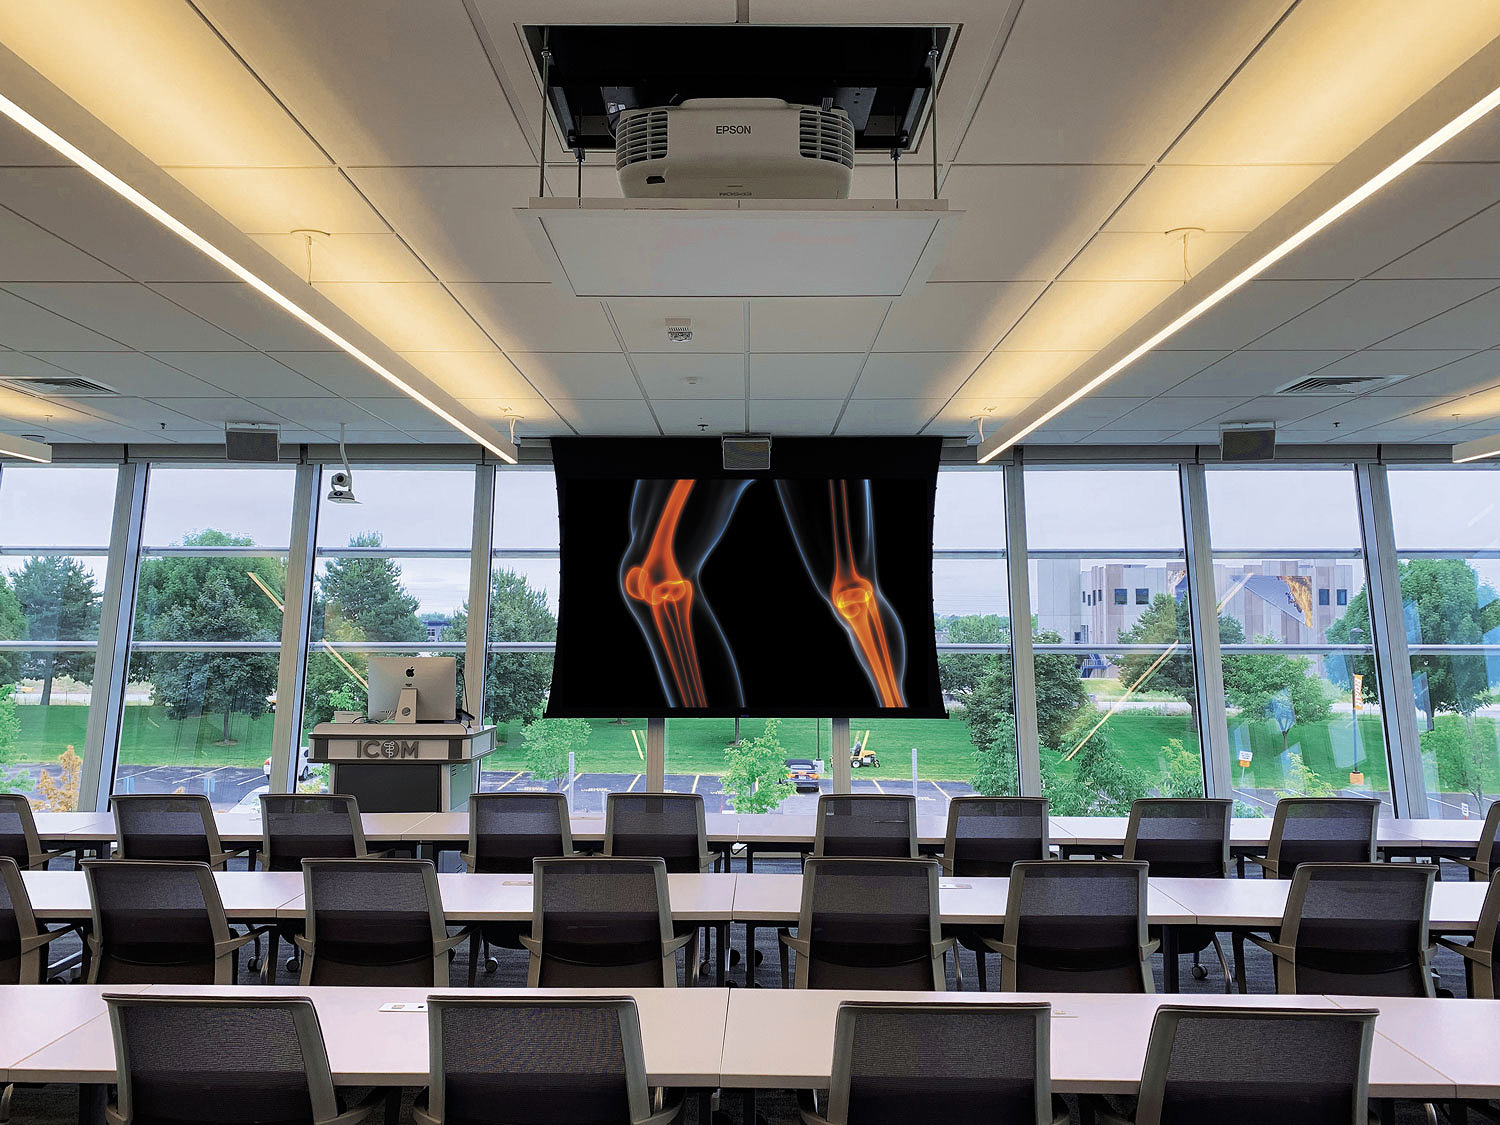 Der Glassroom-Klassenraum hat drei Glaswände, für den ein präzises AV-Systemdesign und eine entsprechende Installation beachtet werden musste, um eine hochqualitative Bildwiedergabe zu ermöglichen und Audioreflexionen zu minimieren.